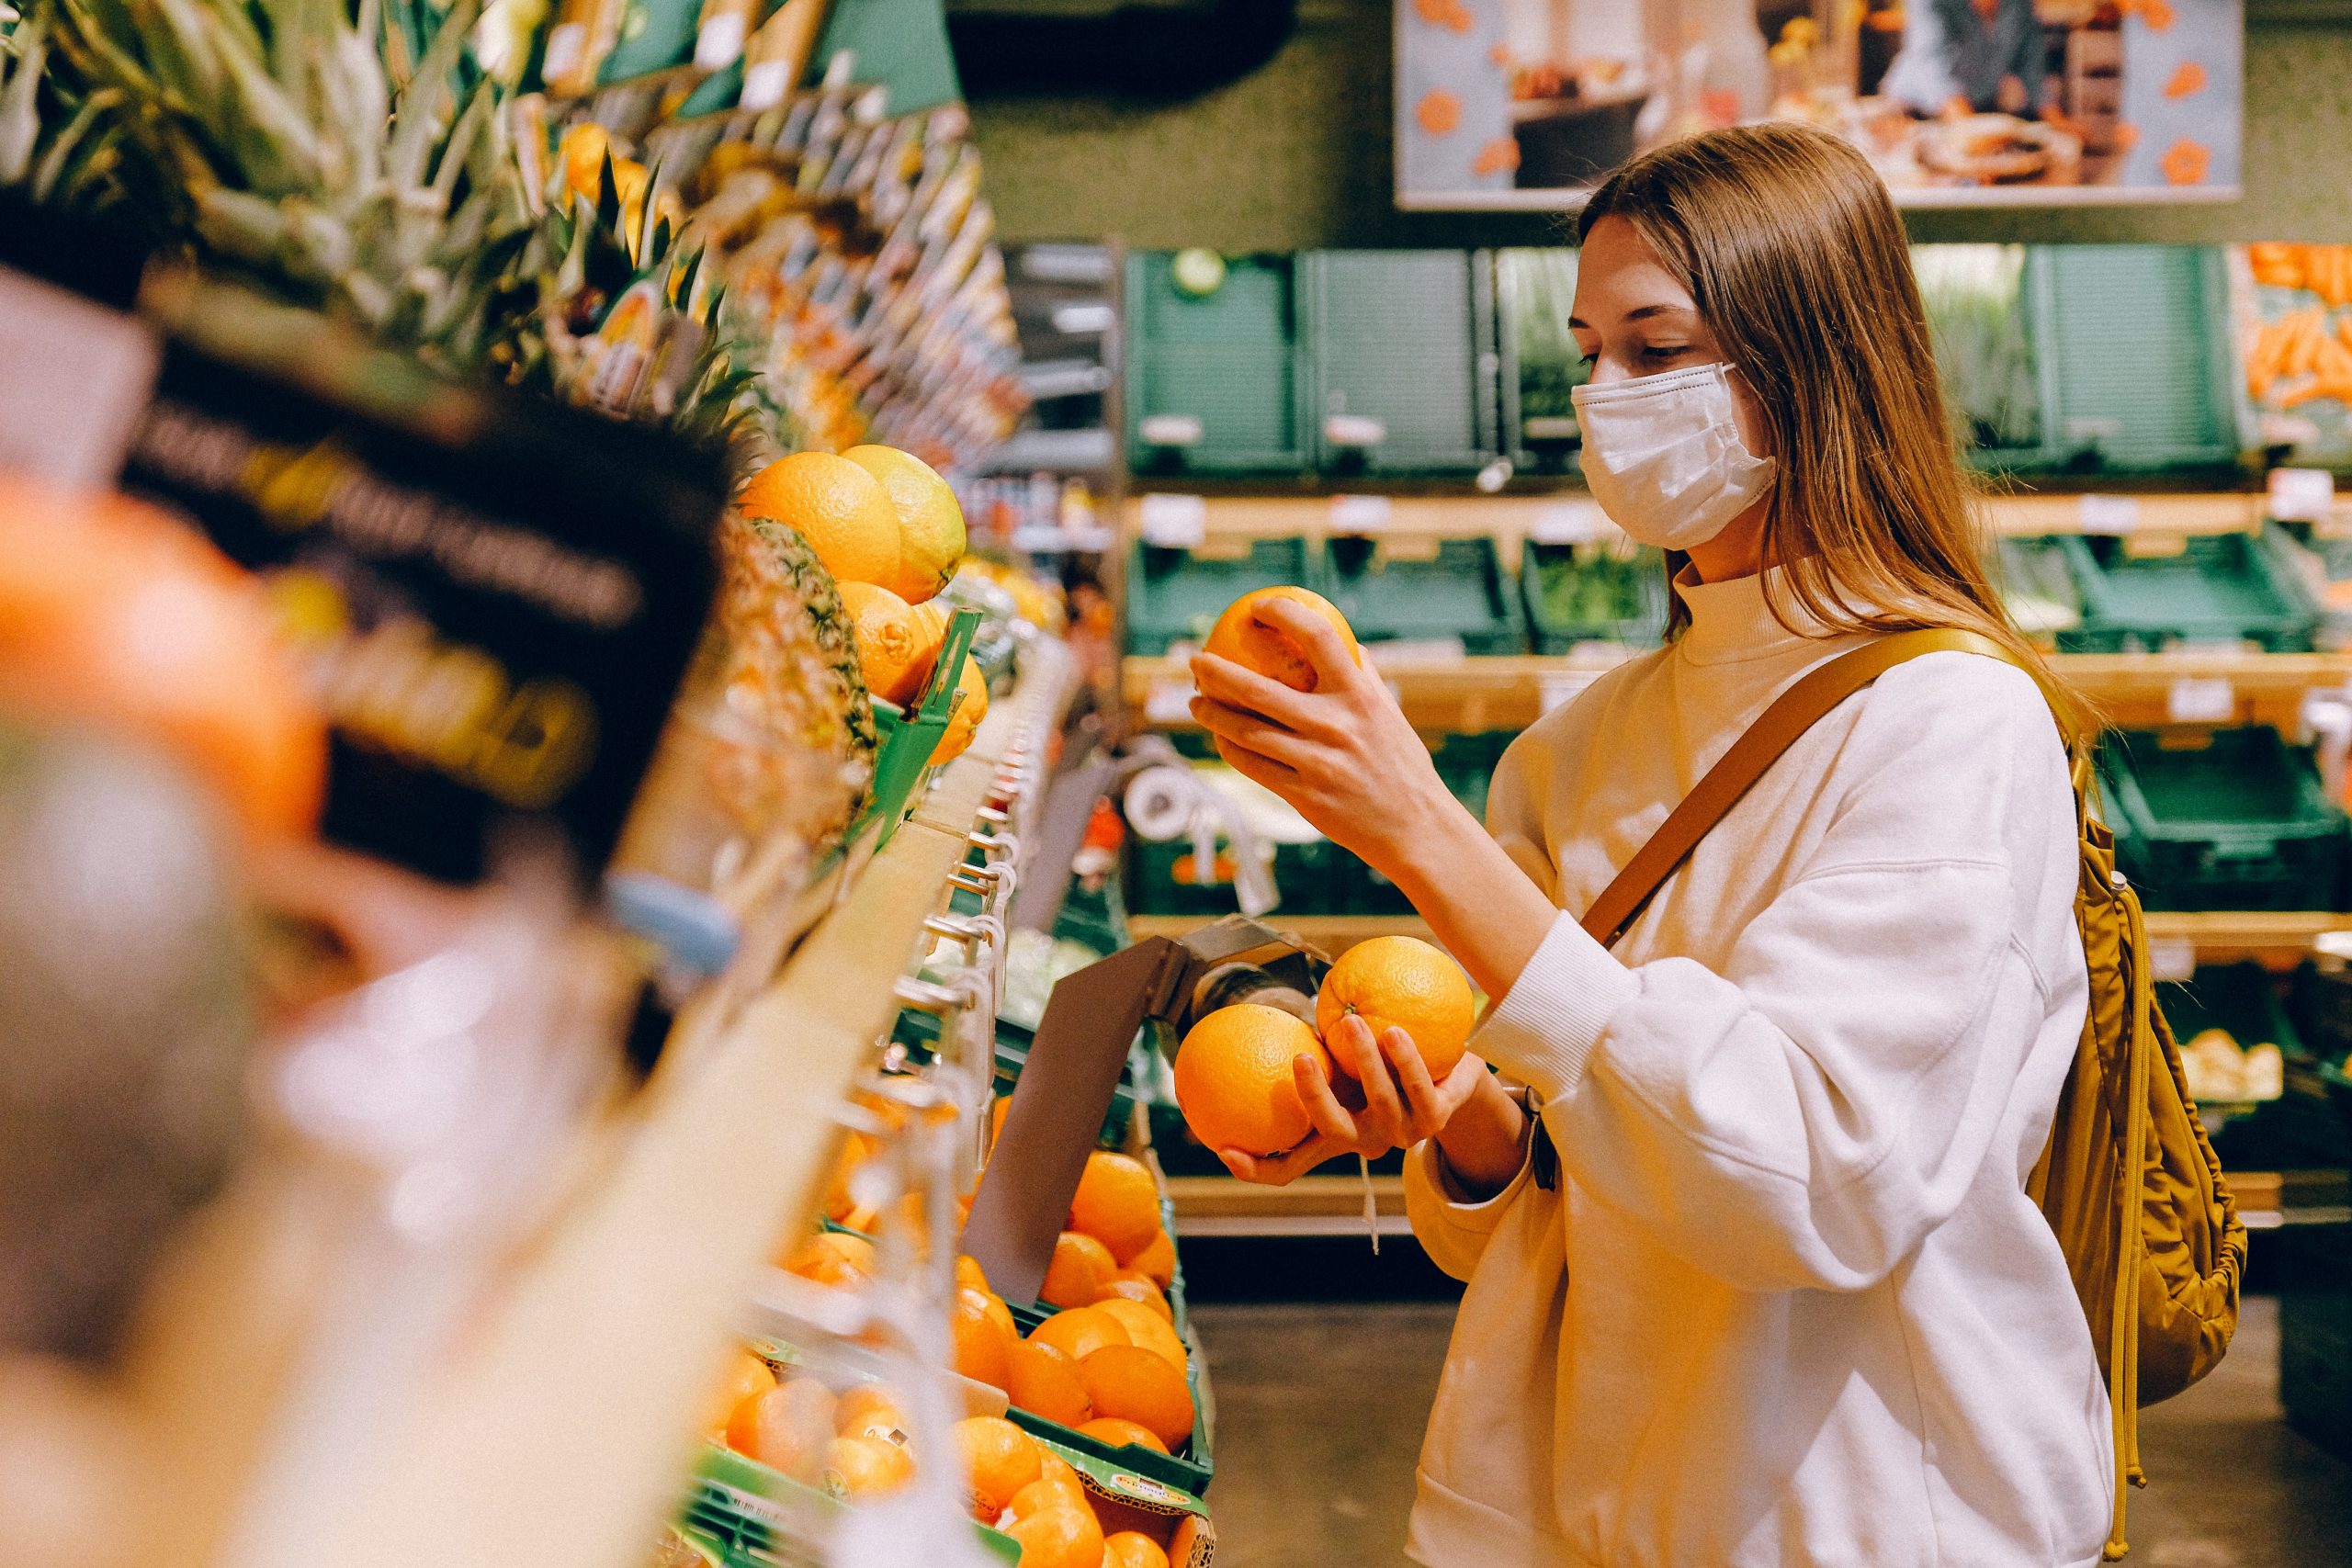 Bild von einer jungen Frau im Supermarkt